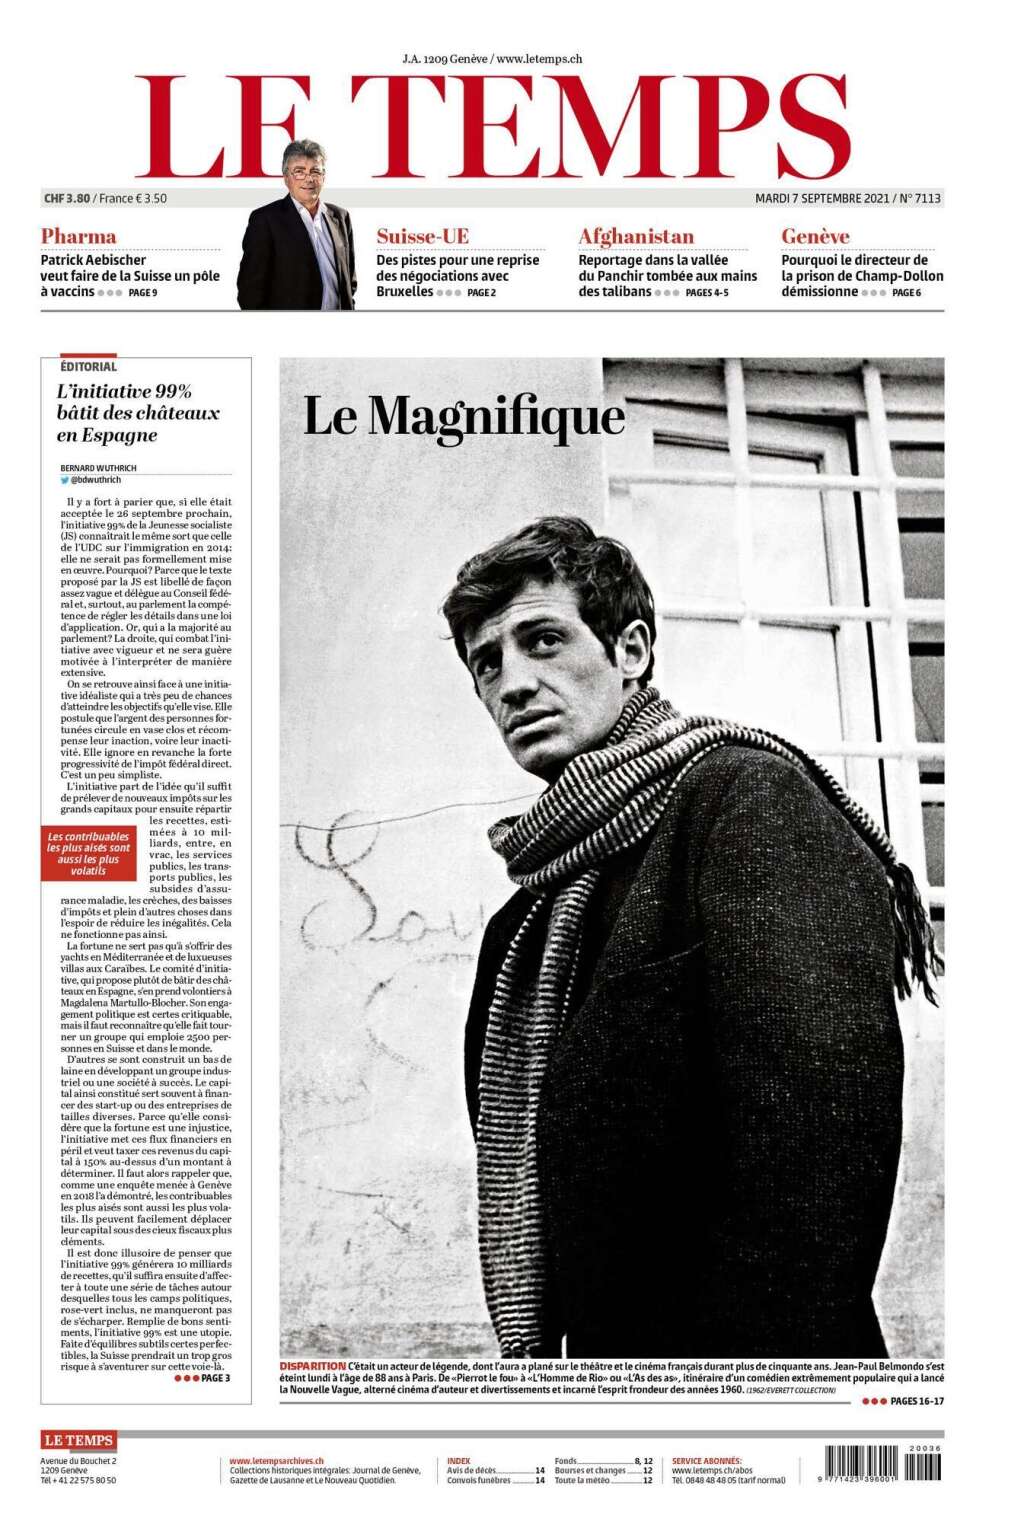 Le Temps - "Le Magnifique", se souvient le quotidien suisse.